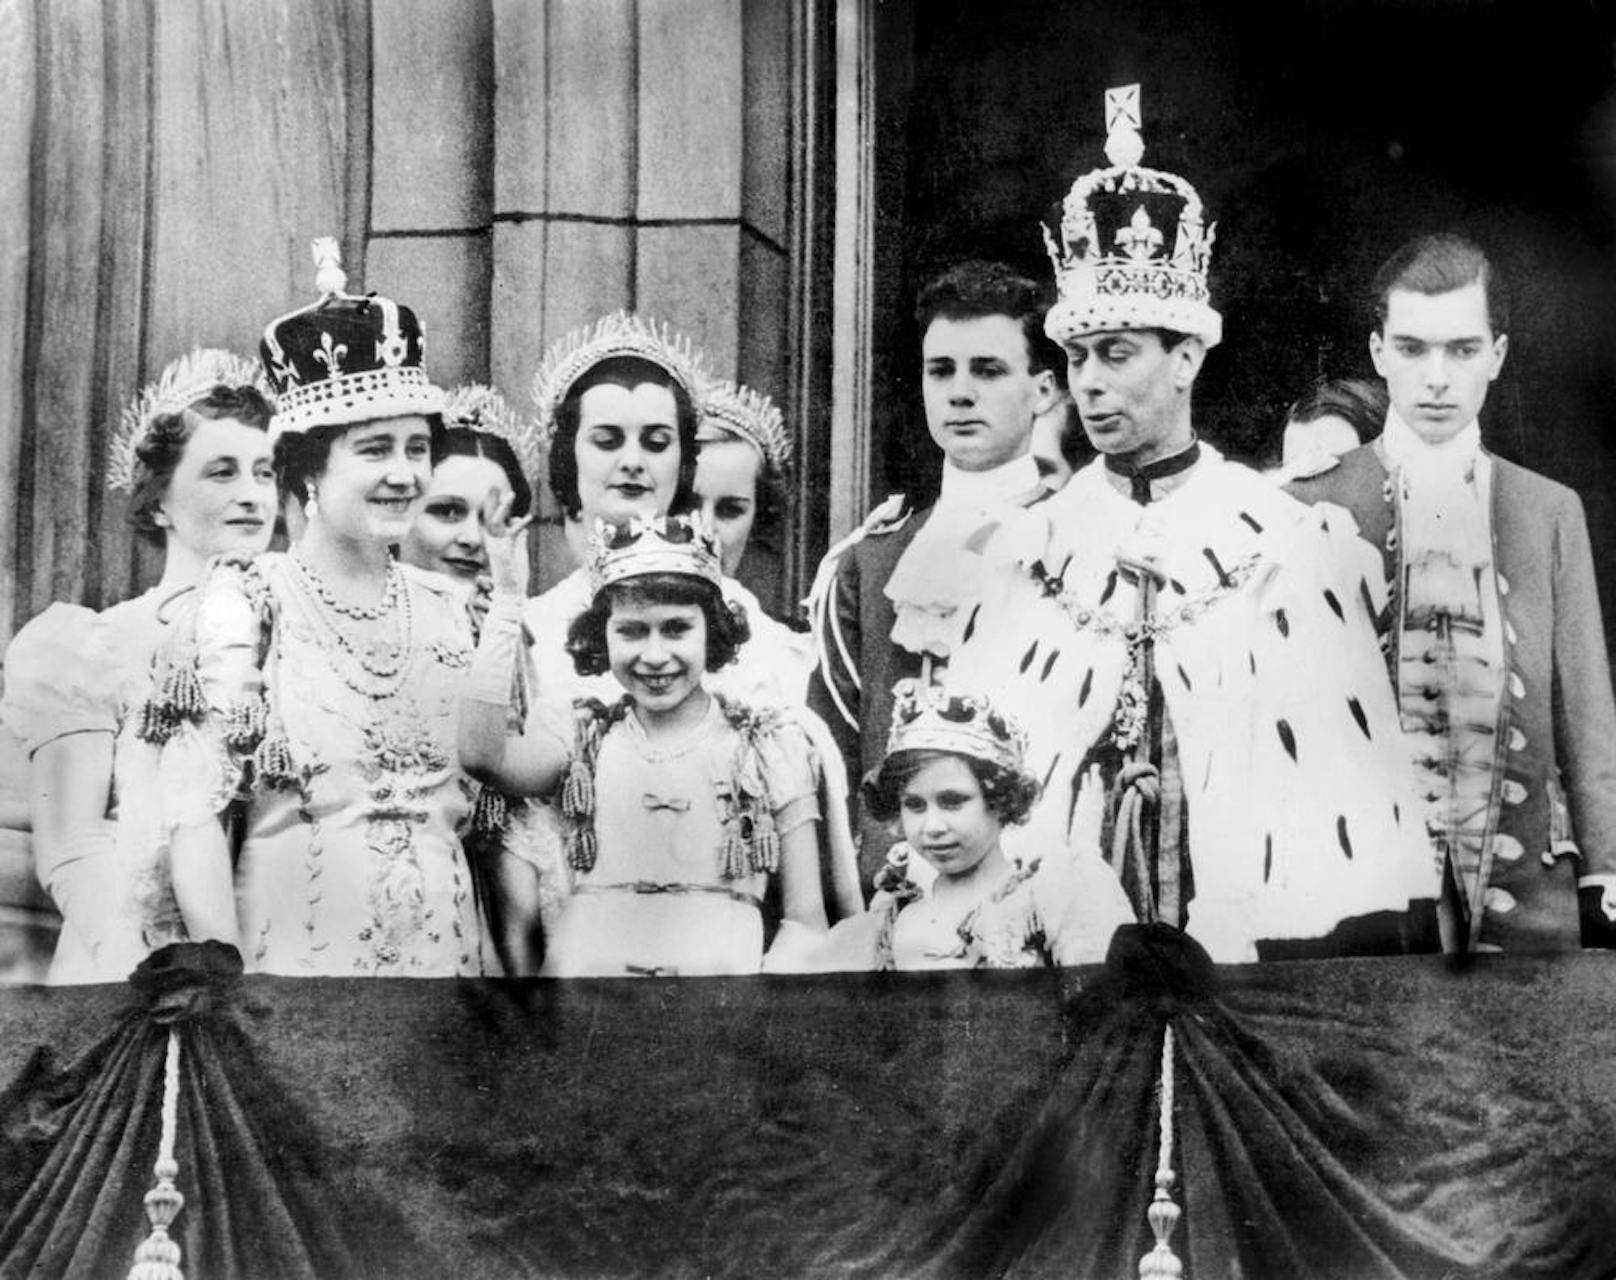 Ihre Familie nannte die zukünftige Queen liebevoll "Lilibet".
Ihr Ehemann Prince Philip nennt sie "Cabbage" (Krautkopf, wegen der Frisur).

Foto: 1936 - King George VI, Queen Elizabeth, die Mutter der Queen und die Prinzessinnen Elizabeth und Margaret